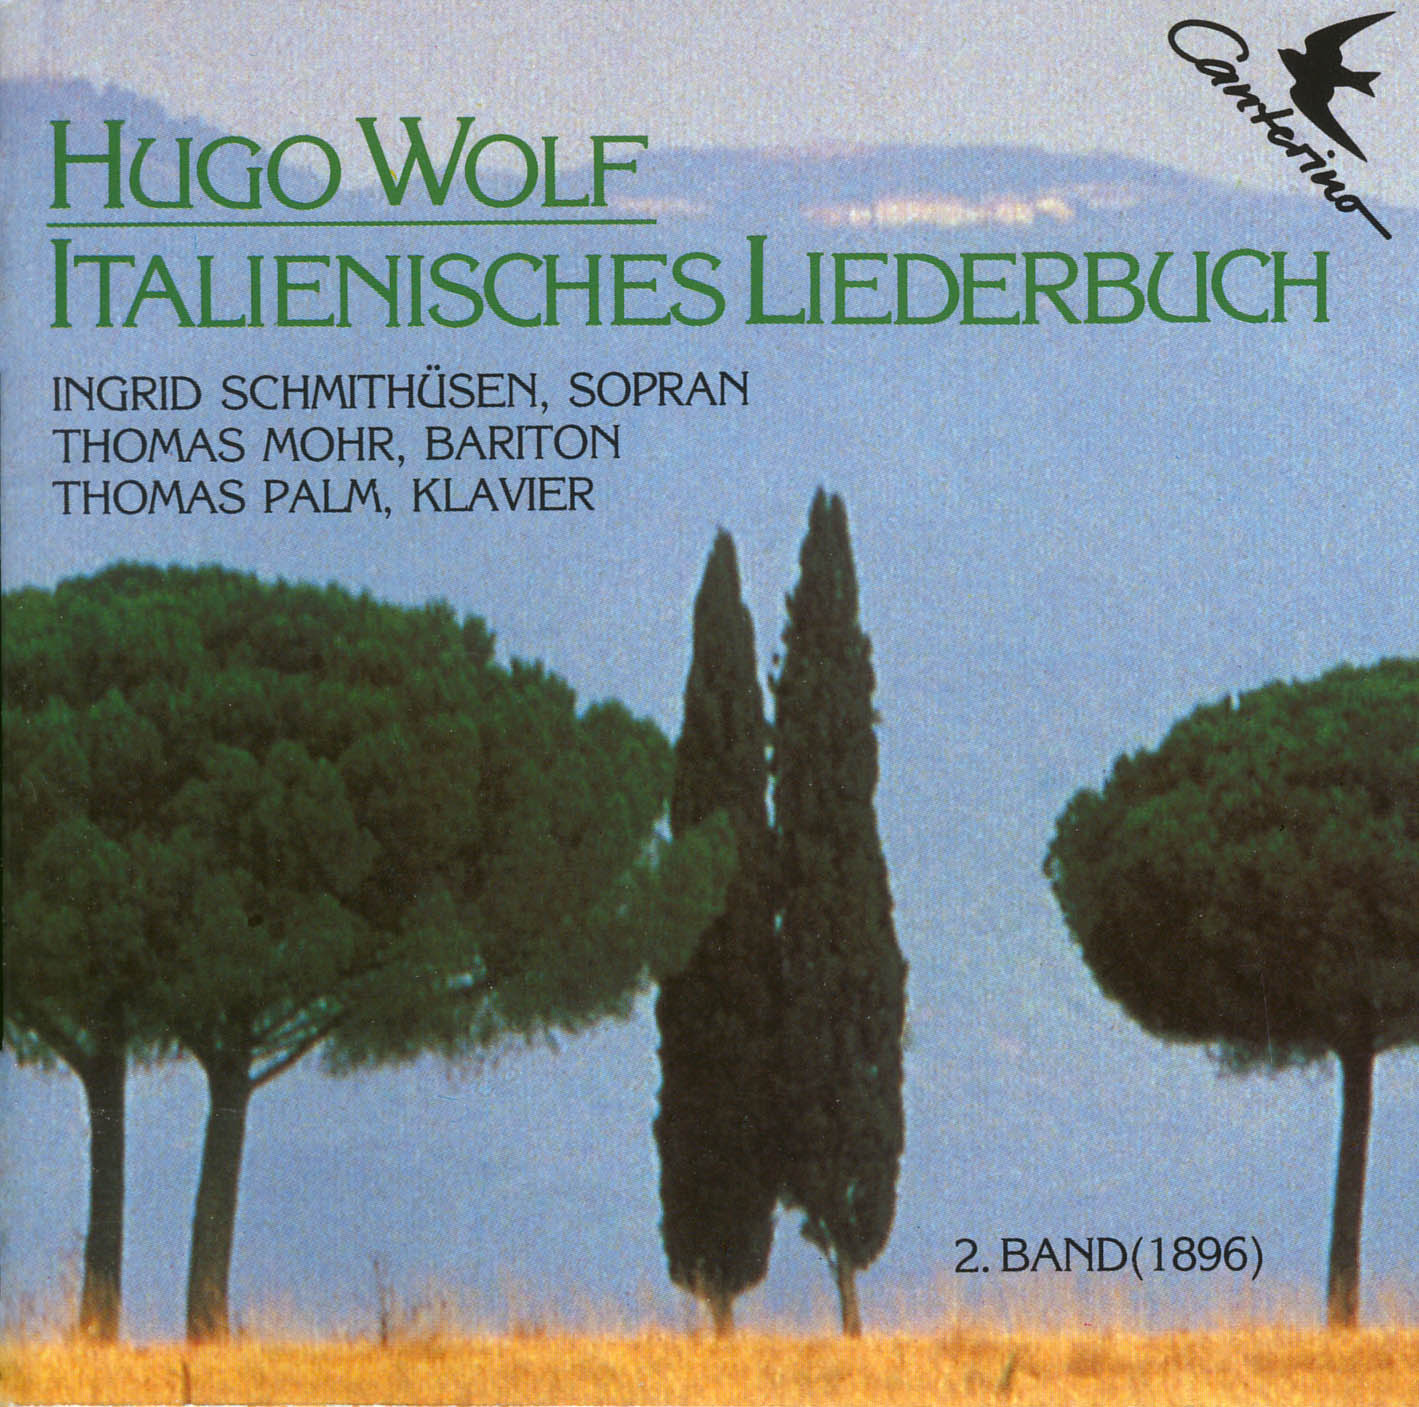 Wolf - Italienisches Liederbuch 2. Band